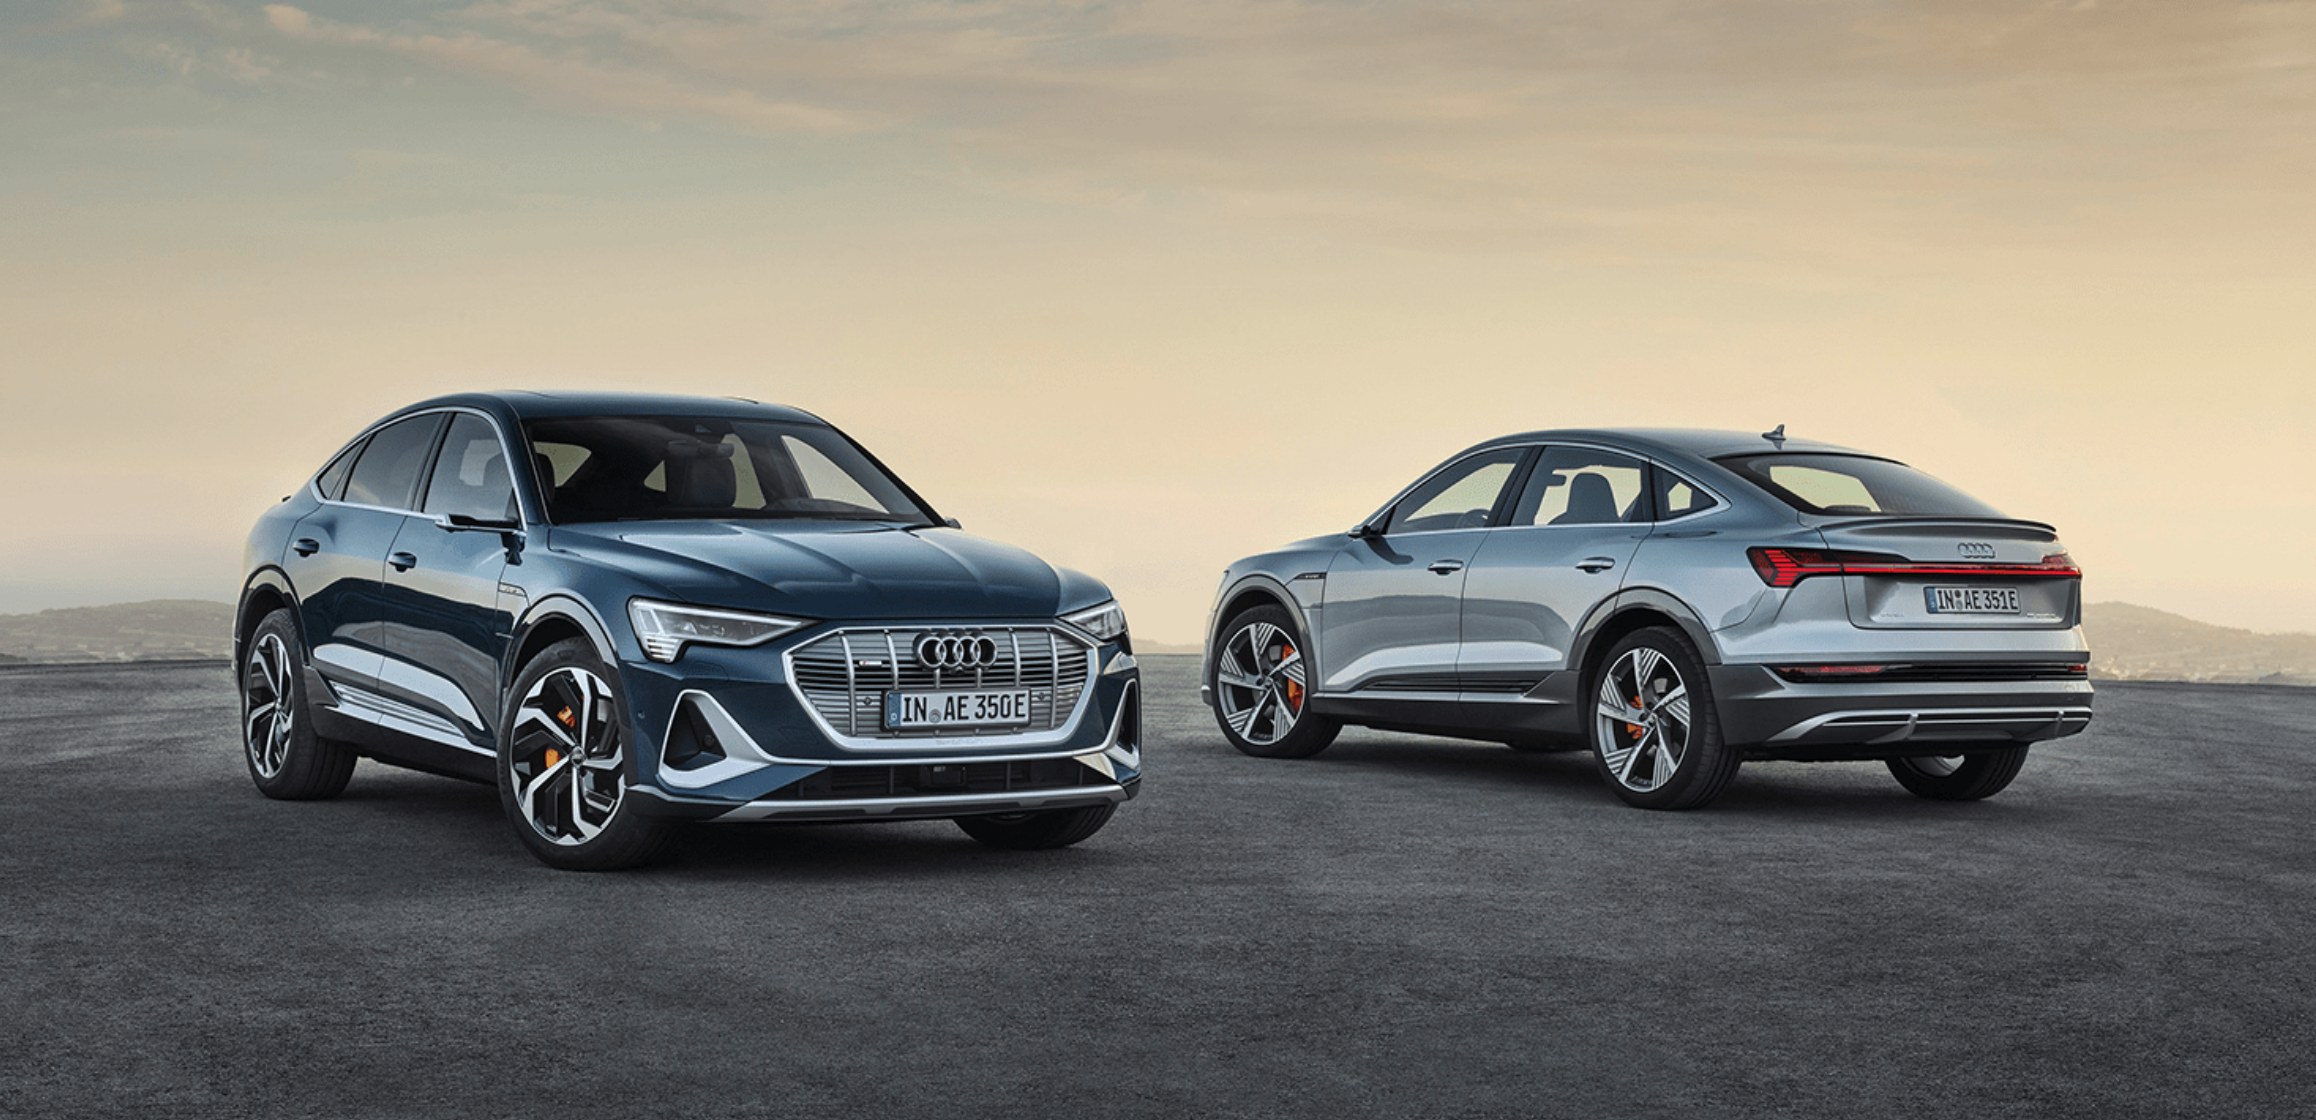 Audi e-tron facelift promises 600 km range